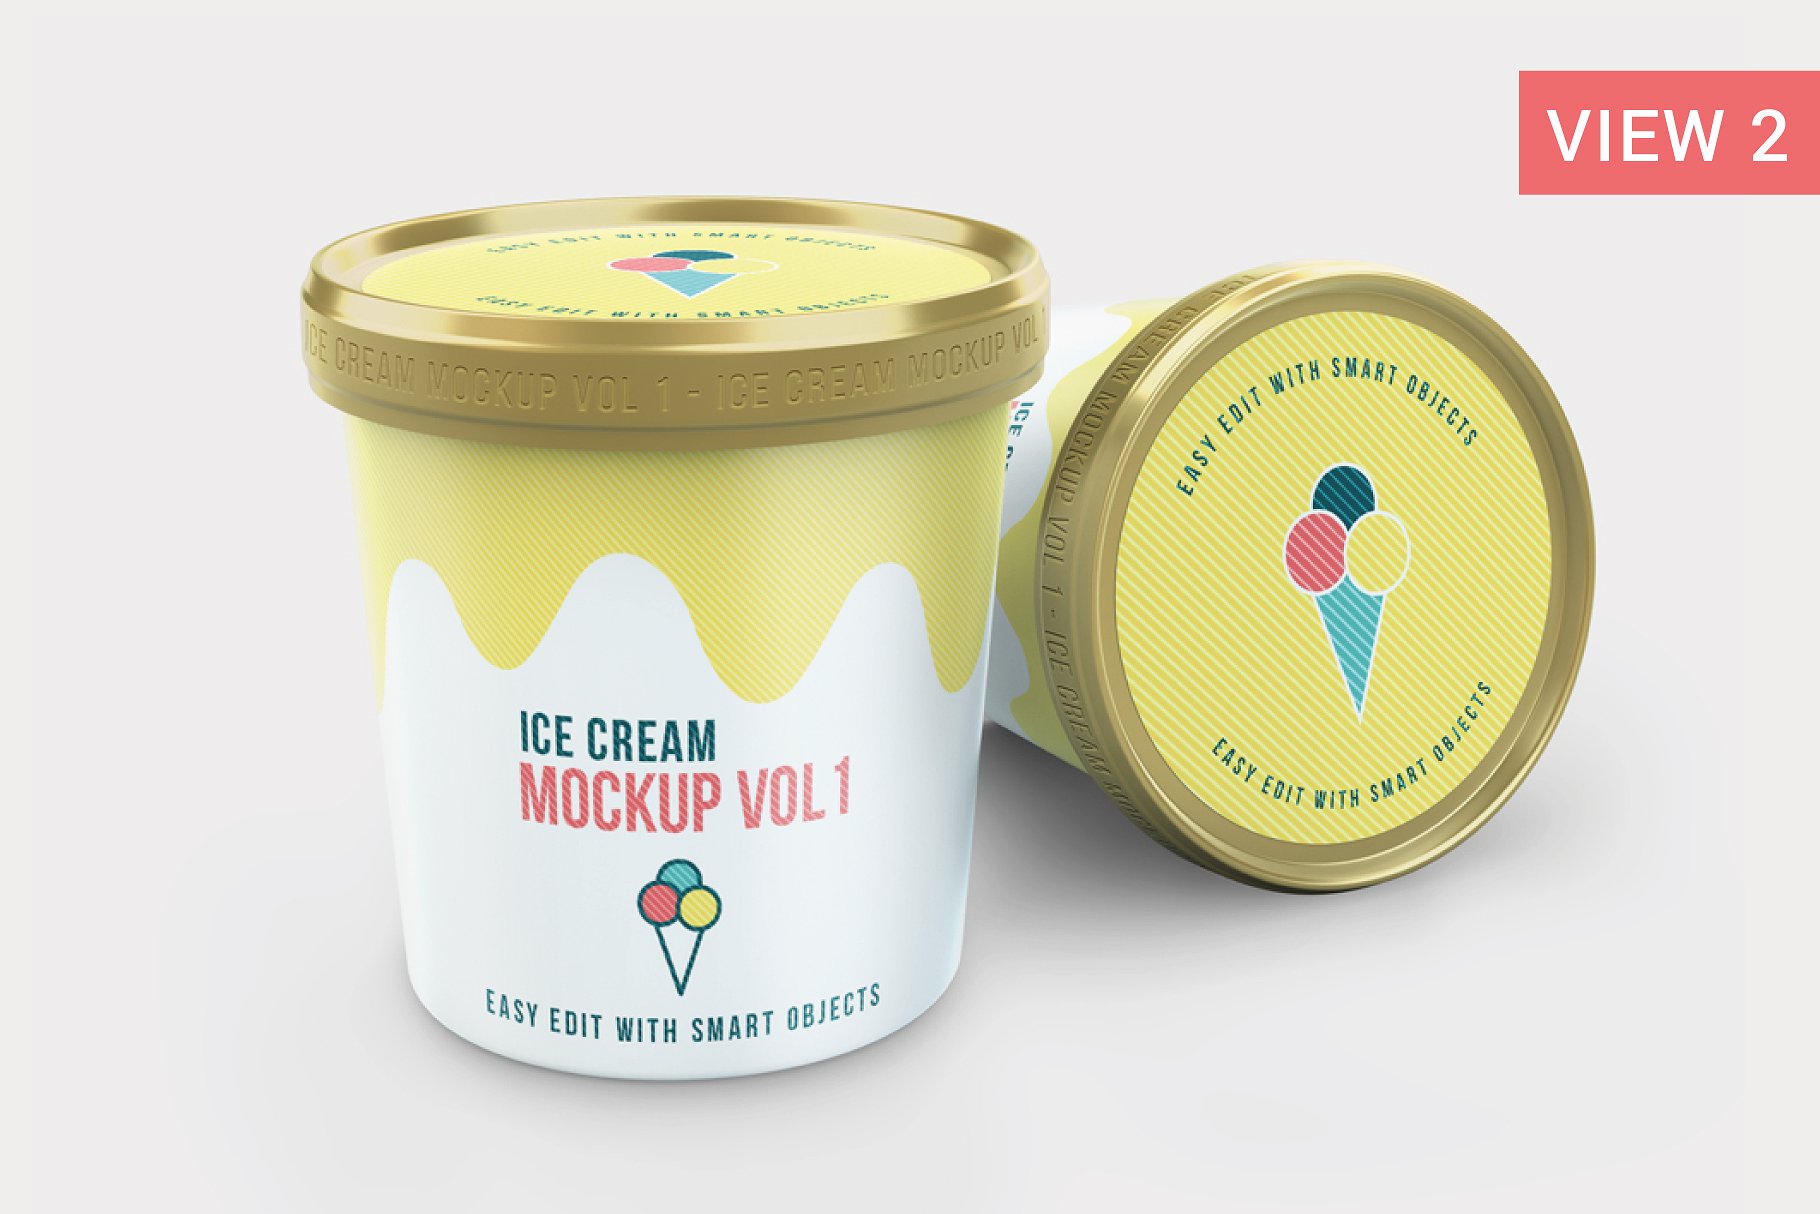 Ice cream packaging jar mockup